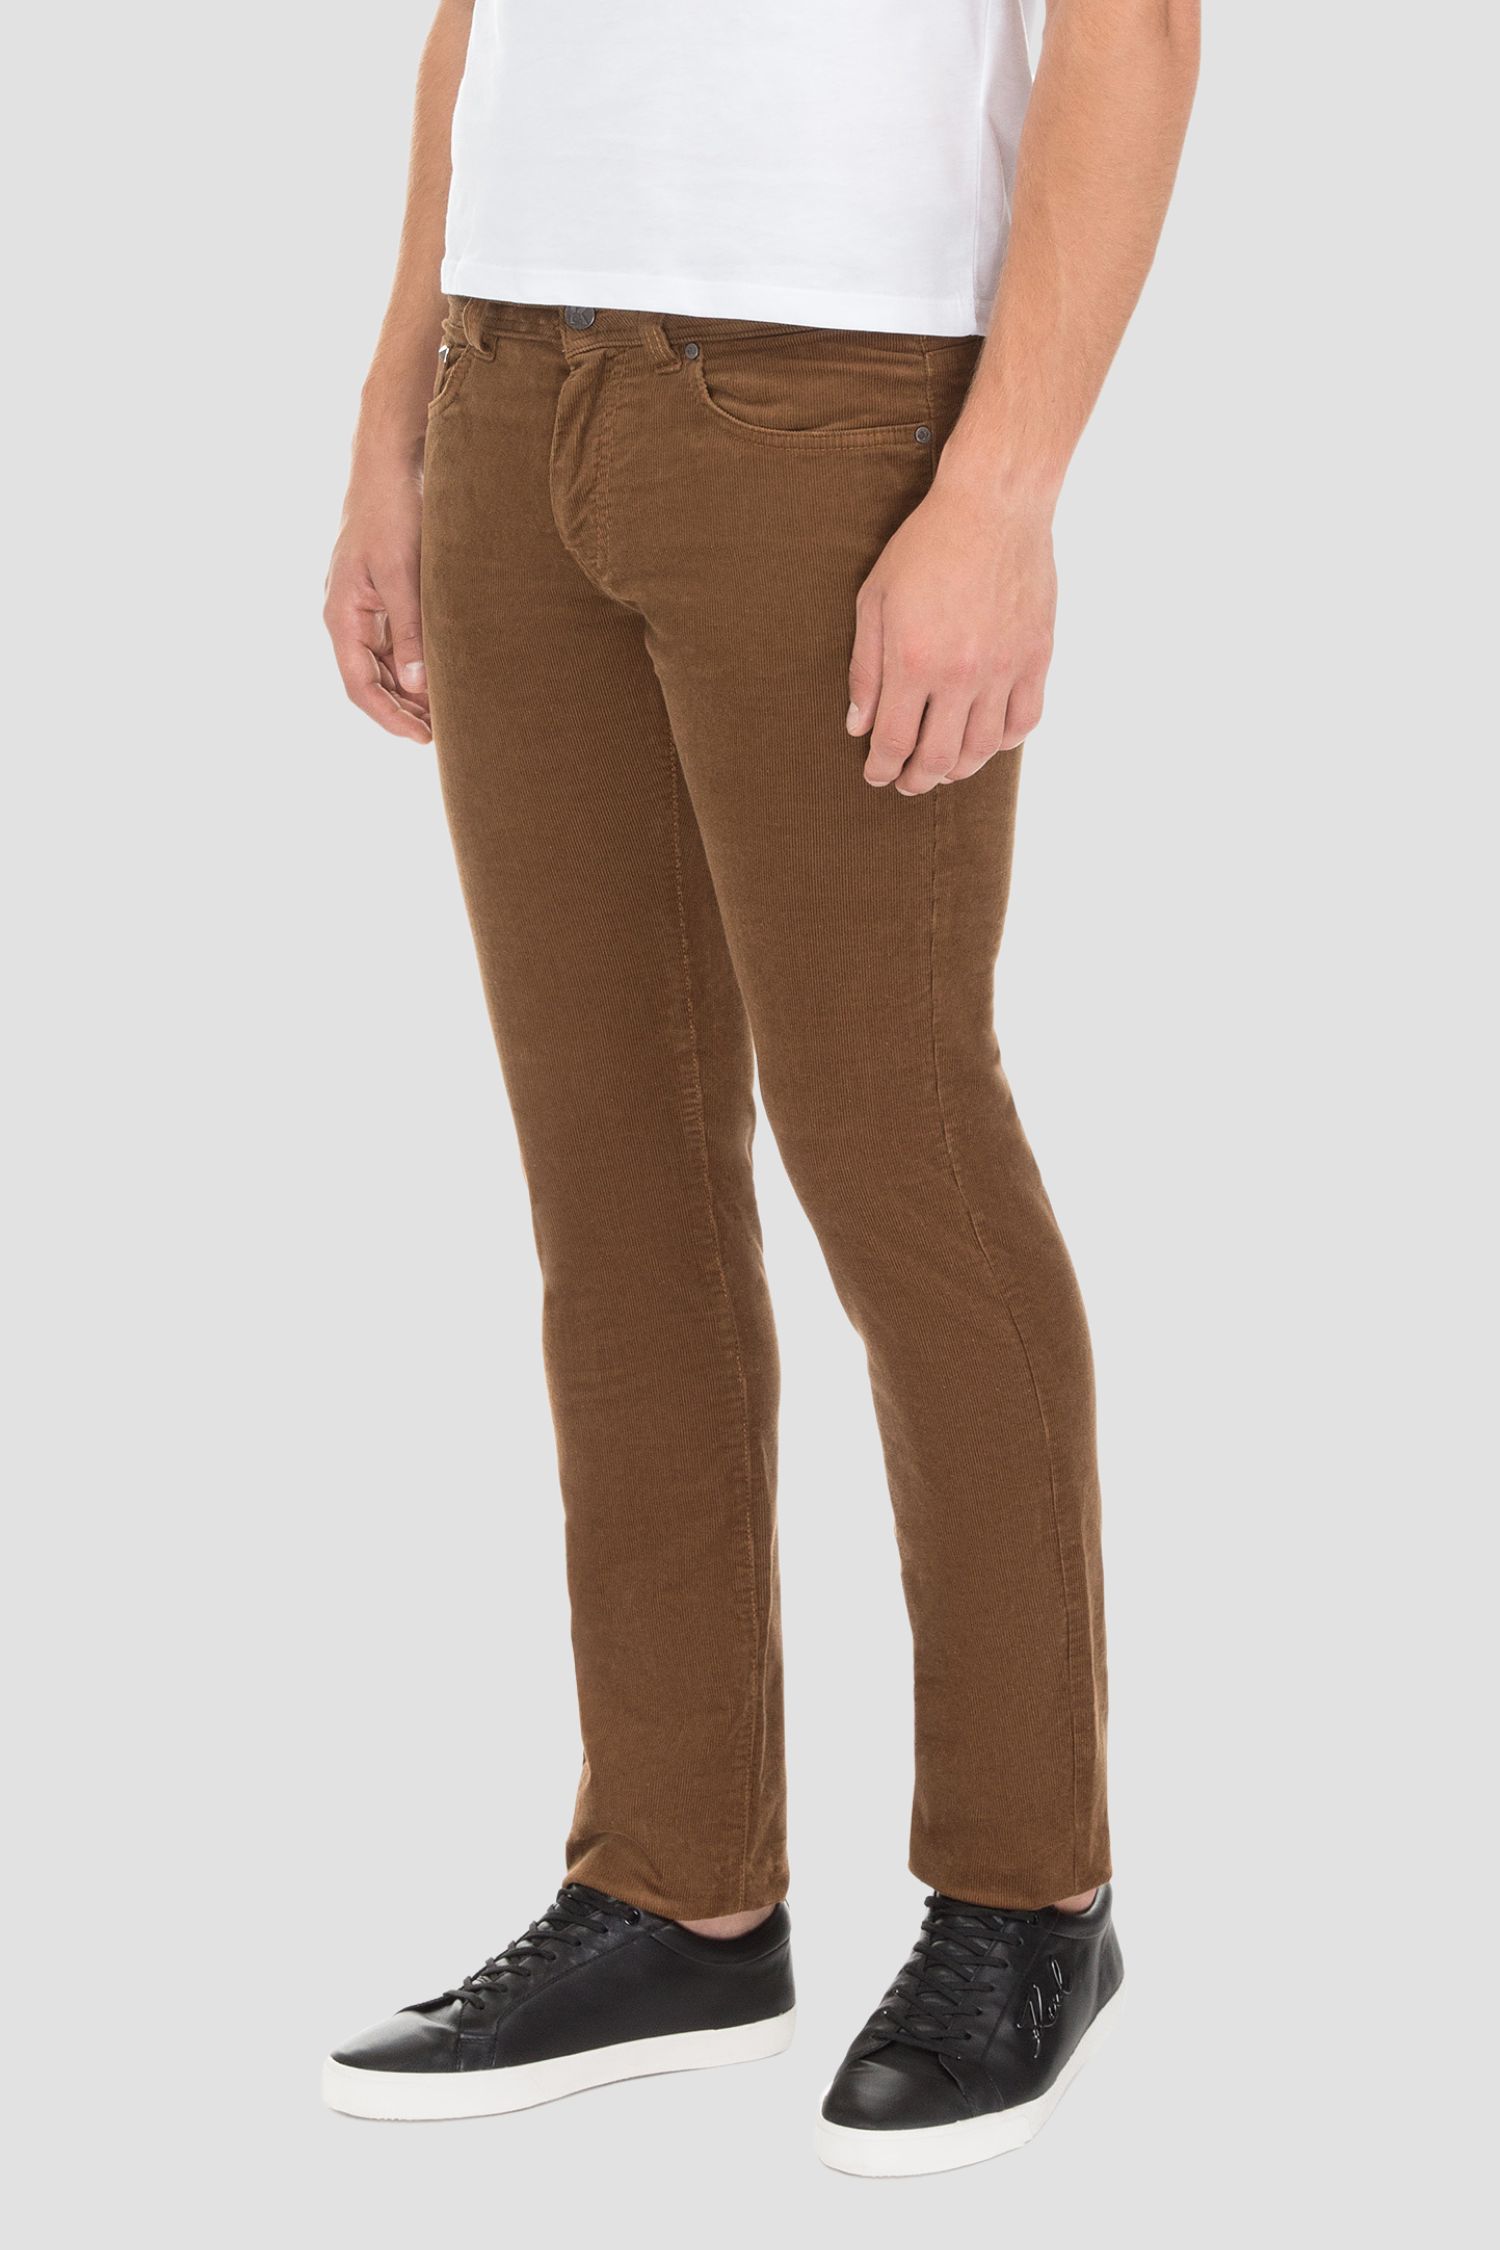 Мужские коричневые вельветовые брюки Karl Lagerfeld 582822.265840;410